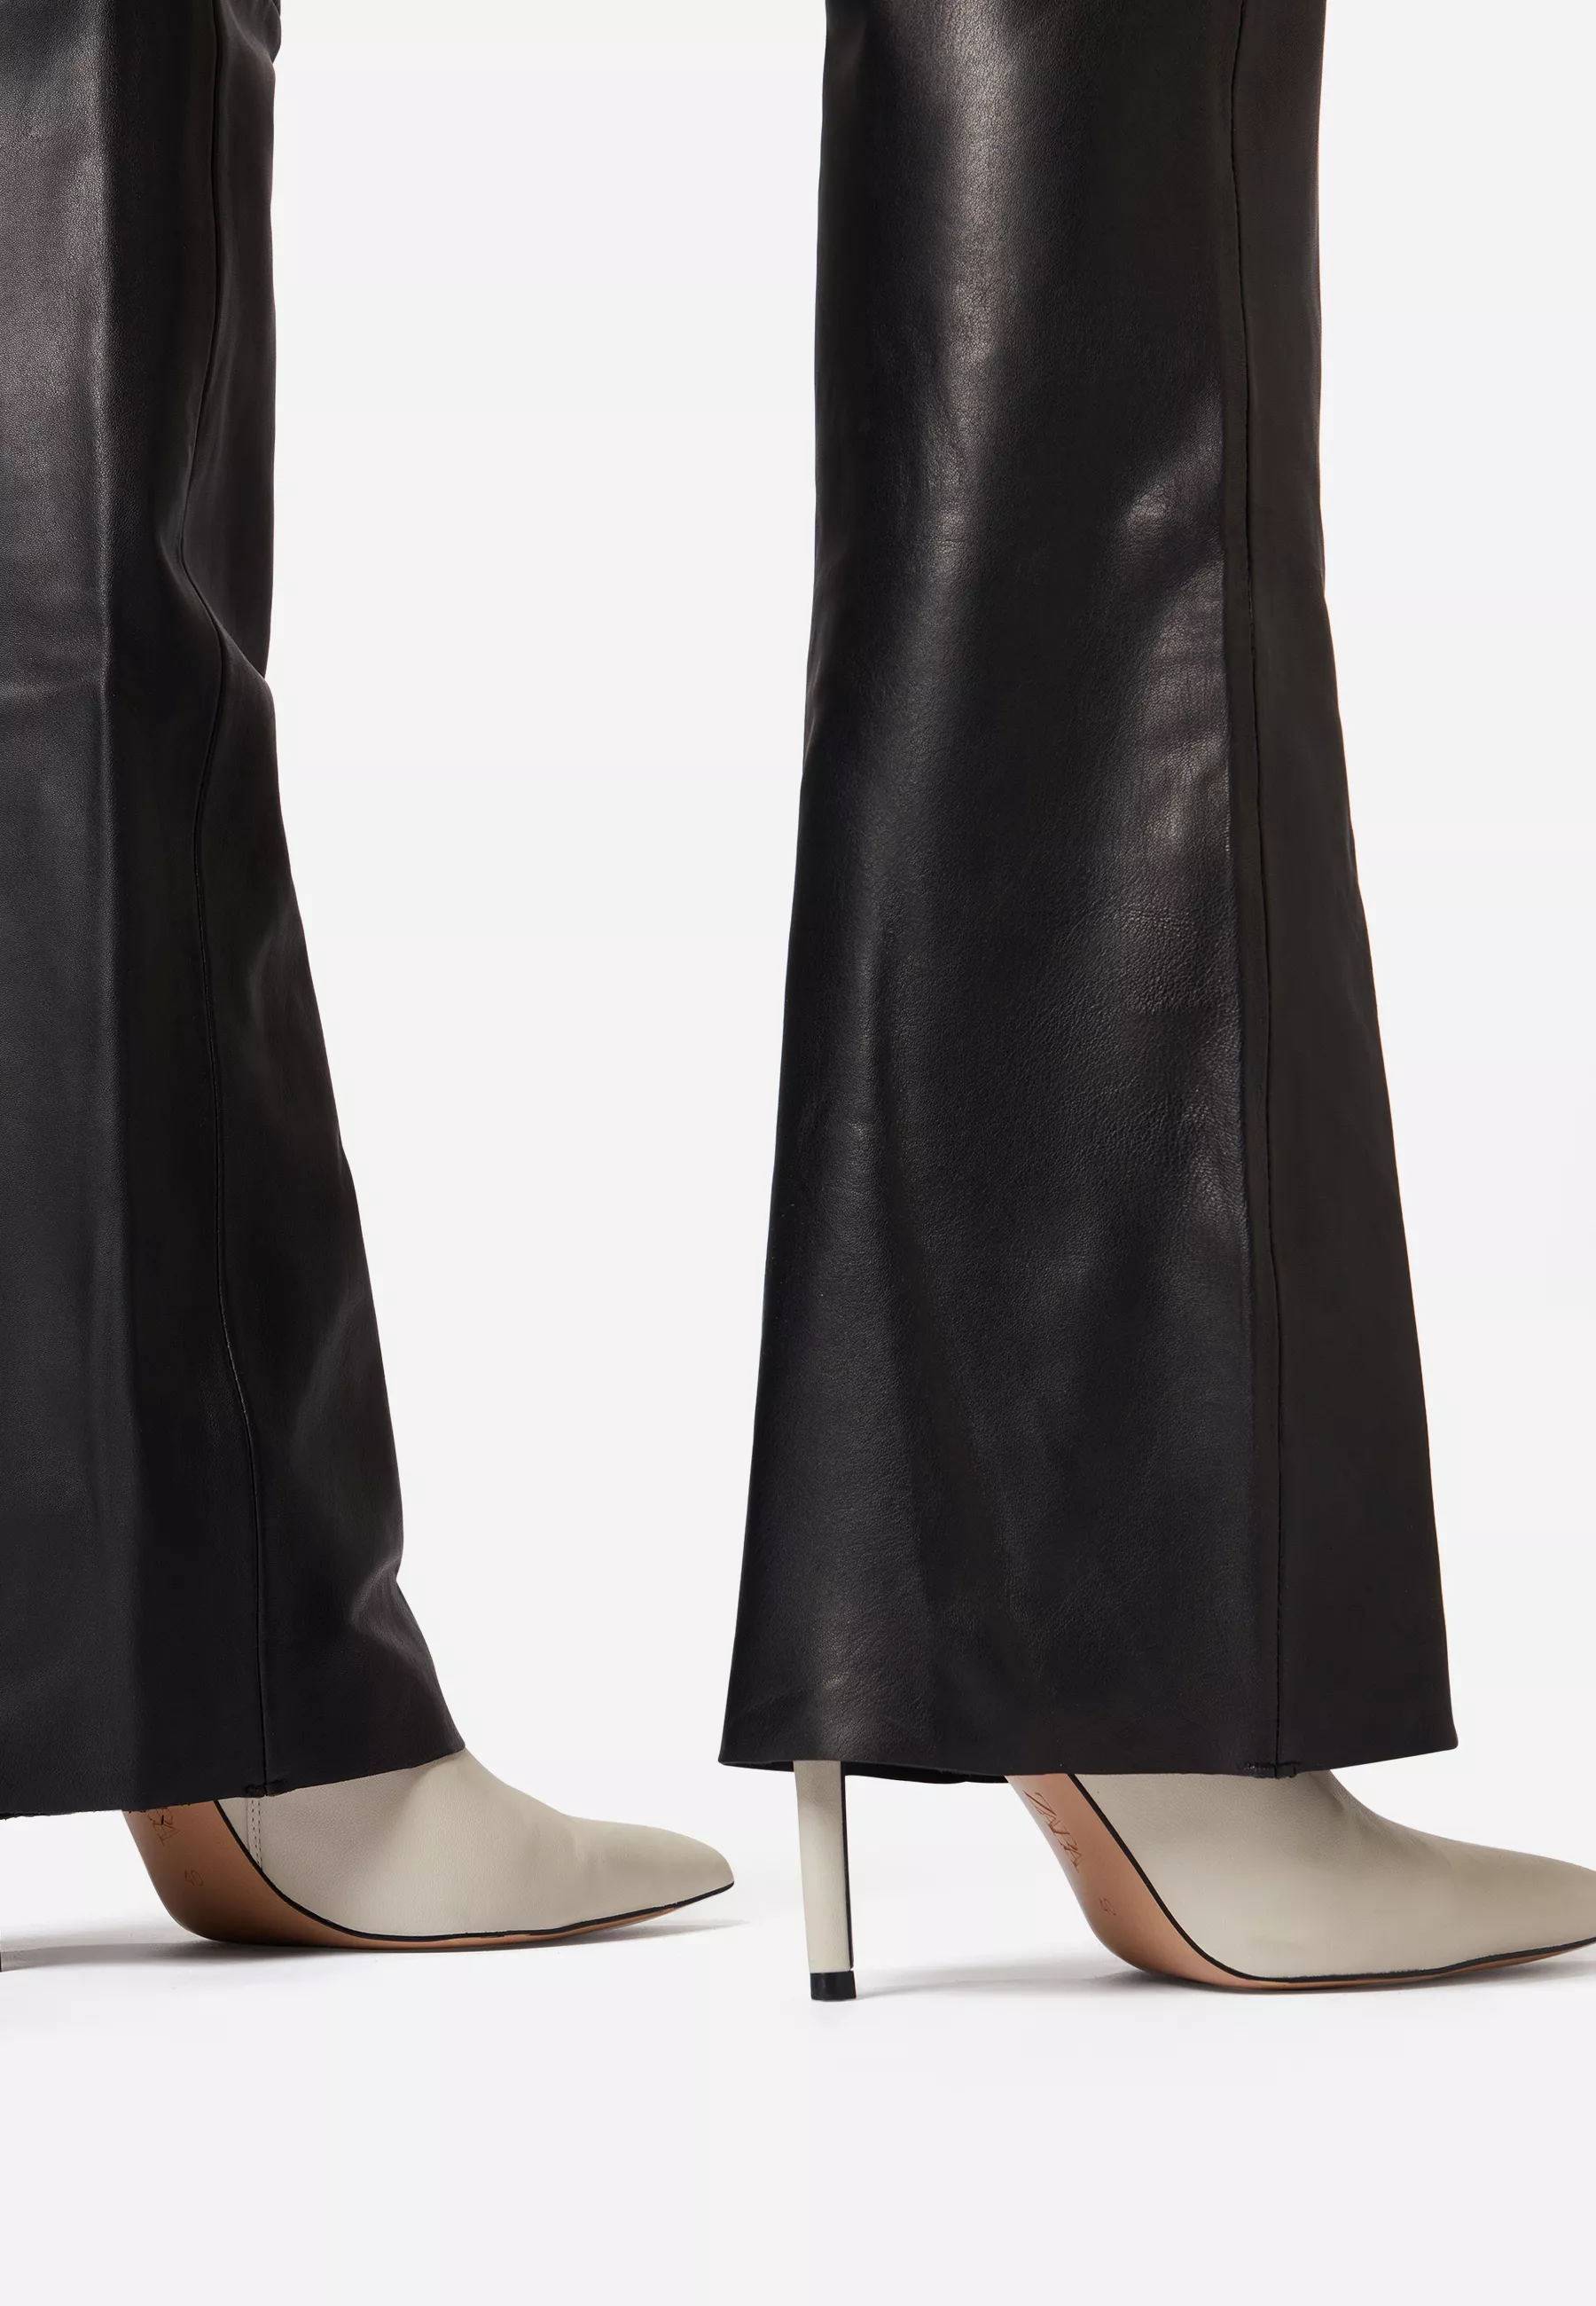 Damen Lederhose Low Cut 2 in Schwarz von Ricano, Detailansicht vom Bein im Bootcut Stil am Model